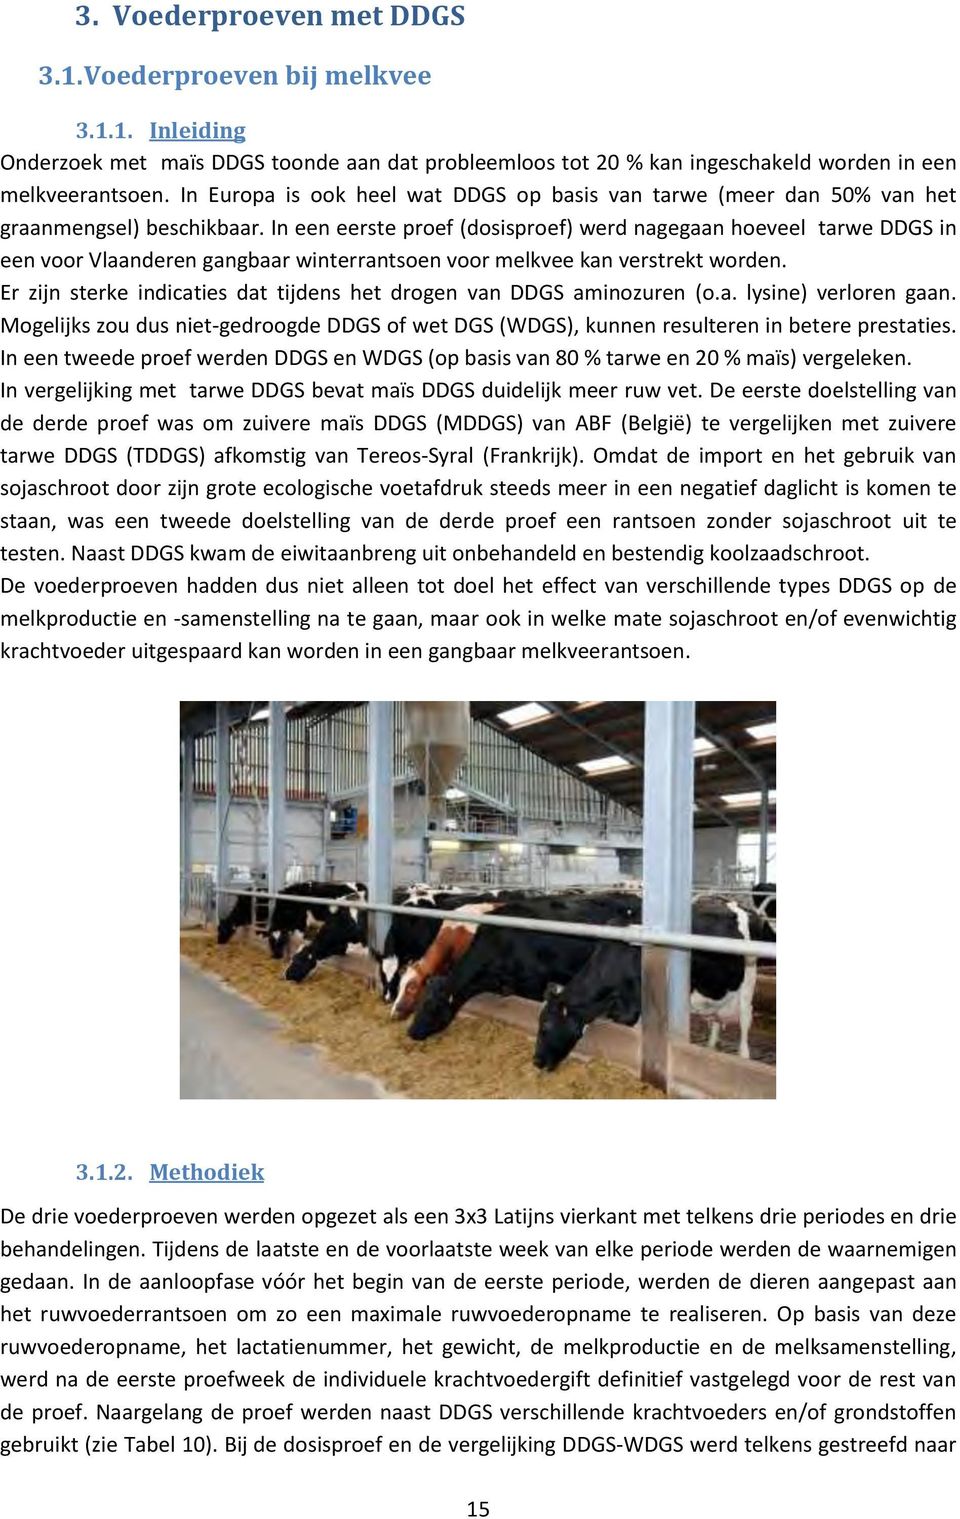 In een eerste proef (dosisproef) werd nagegaan hoeveel tarwe DDGS in een voor Vlaanderen gangbaar winterrantsoen voor melkvee kan verstrekt worden.